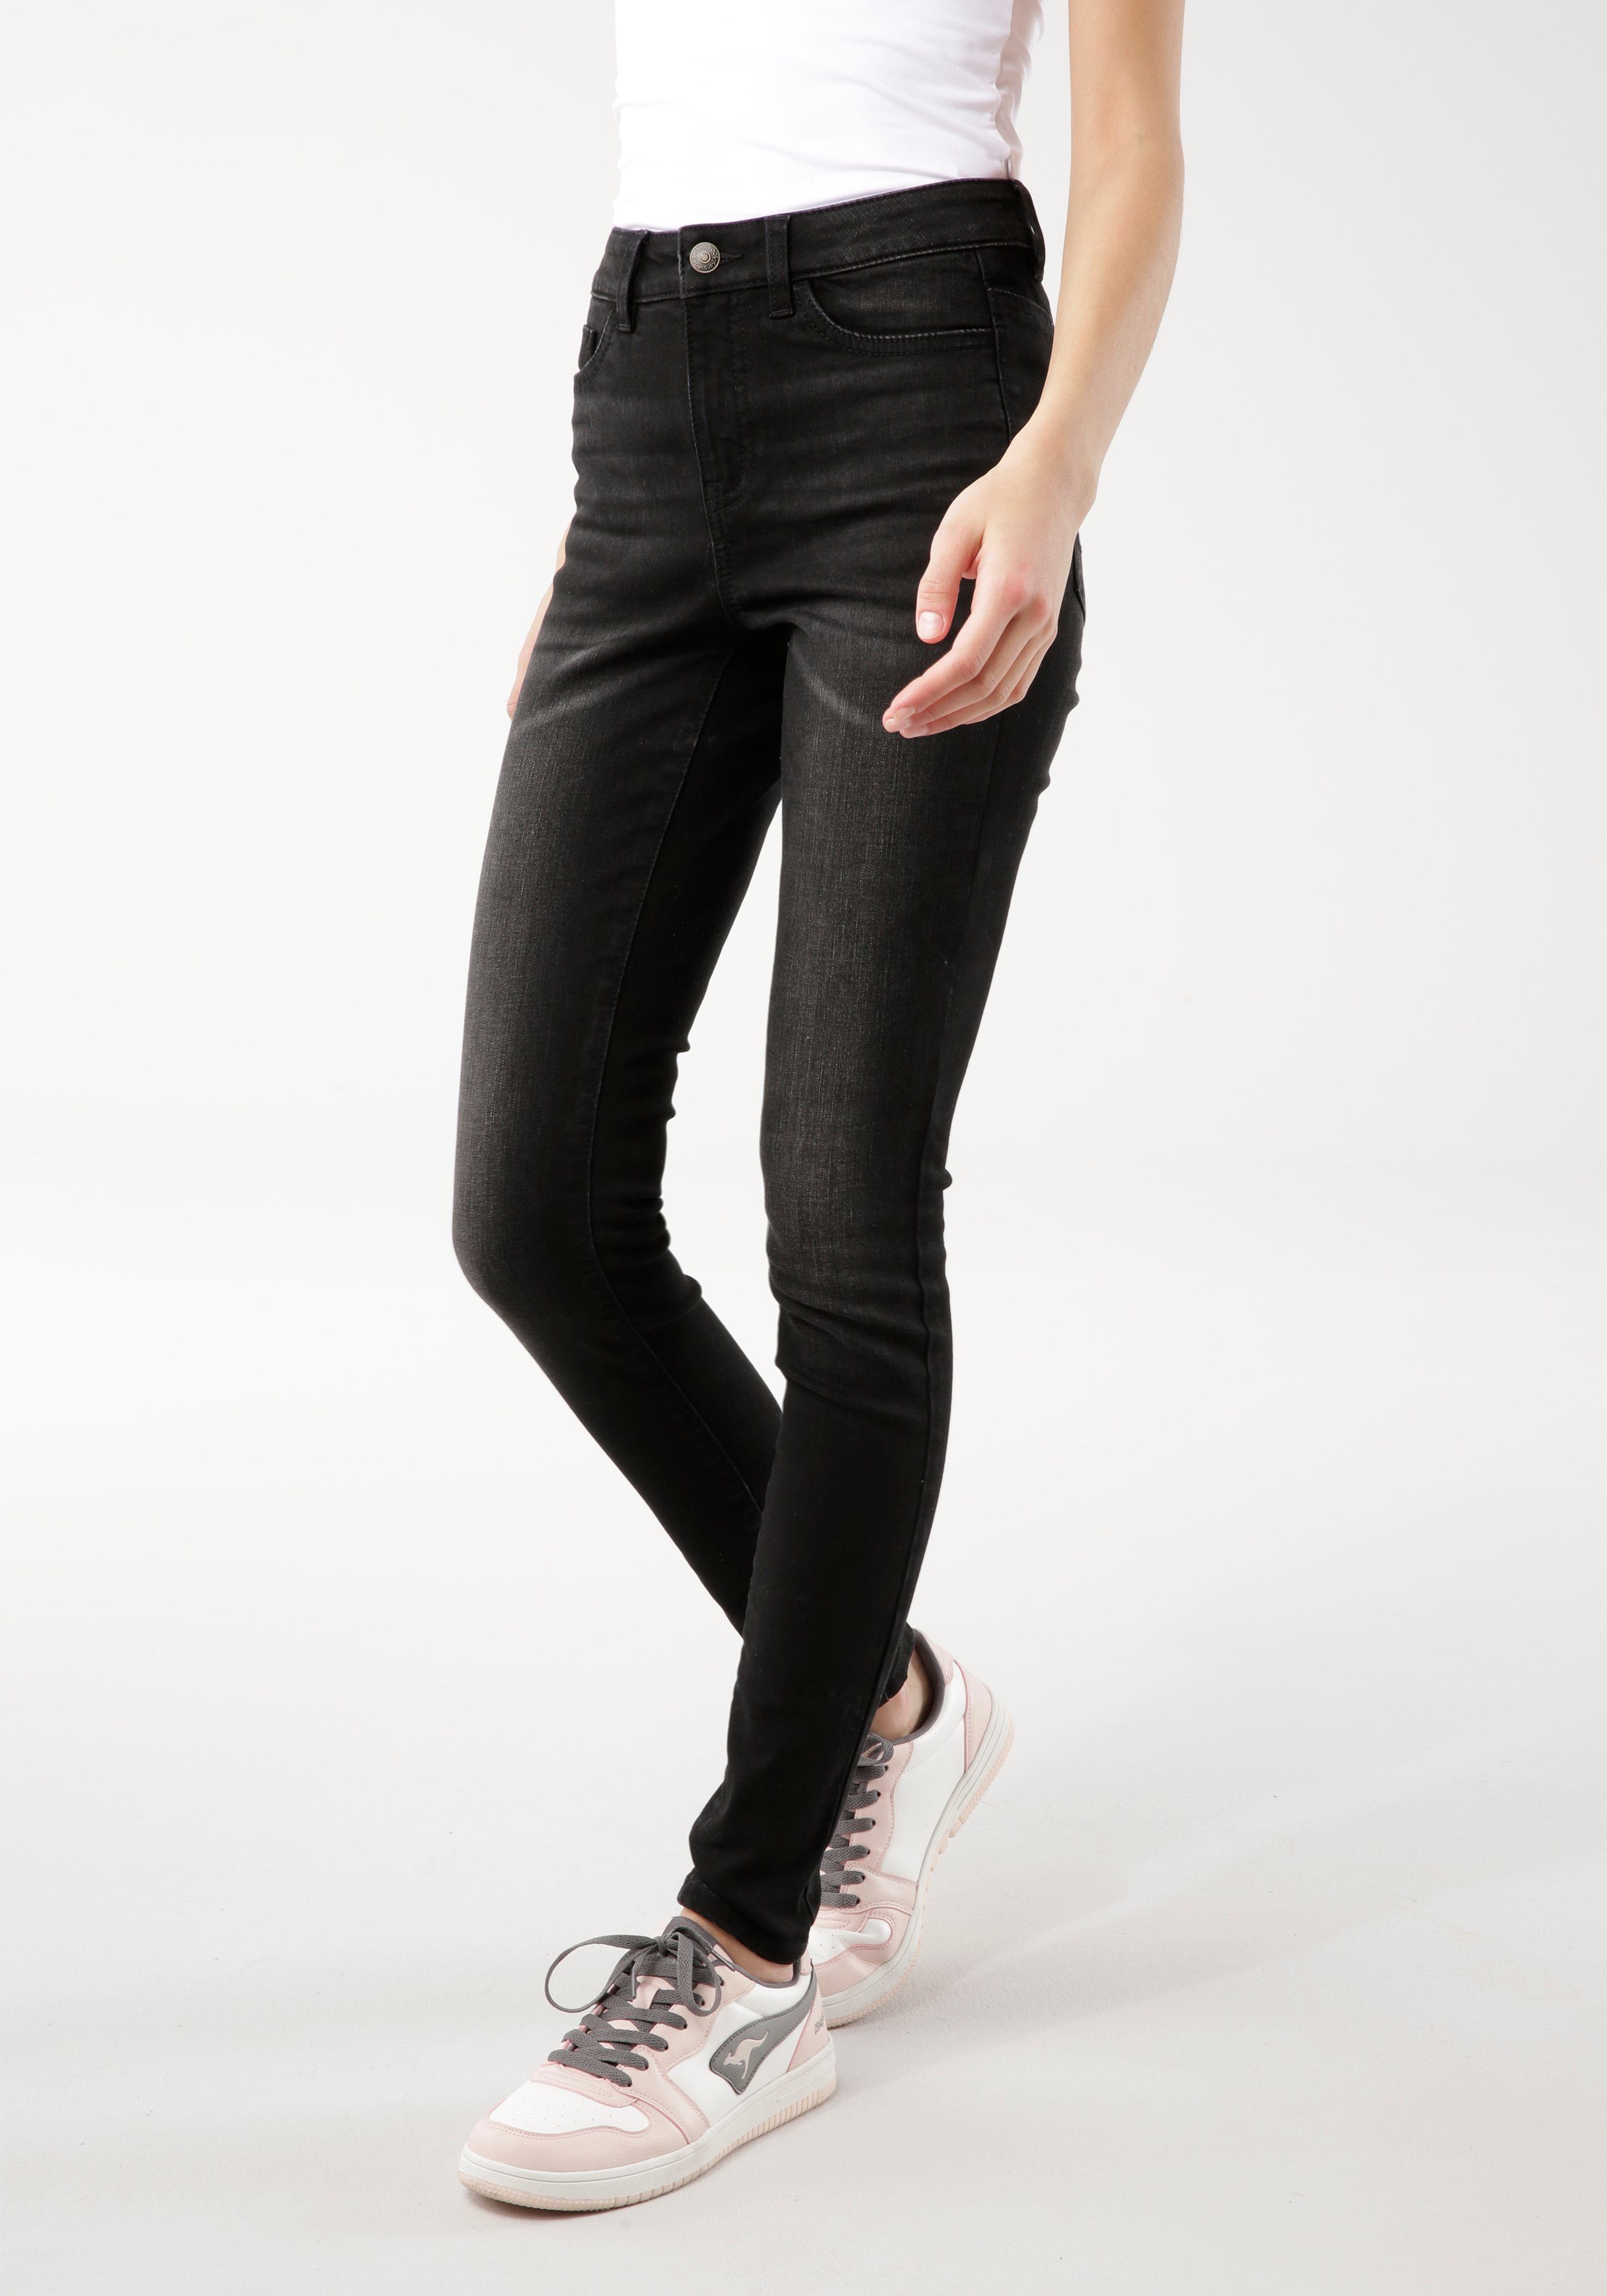 KangaROOS 5-Pocket-Jeans mit SUPER black-used HIGH SKINNY used-Effekt RISE